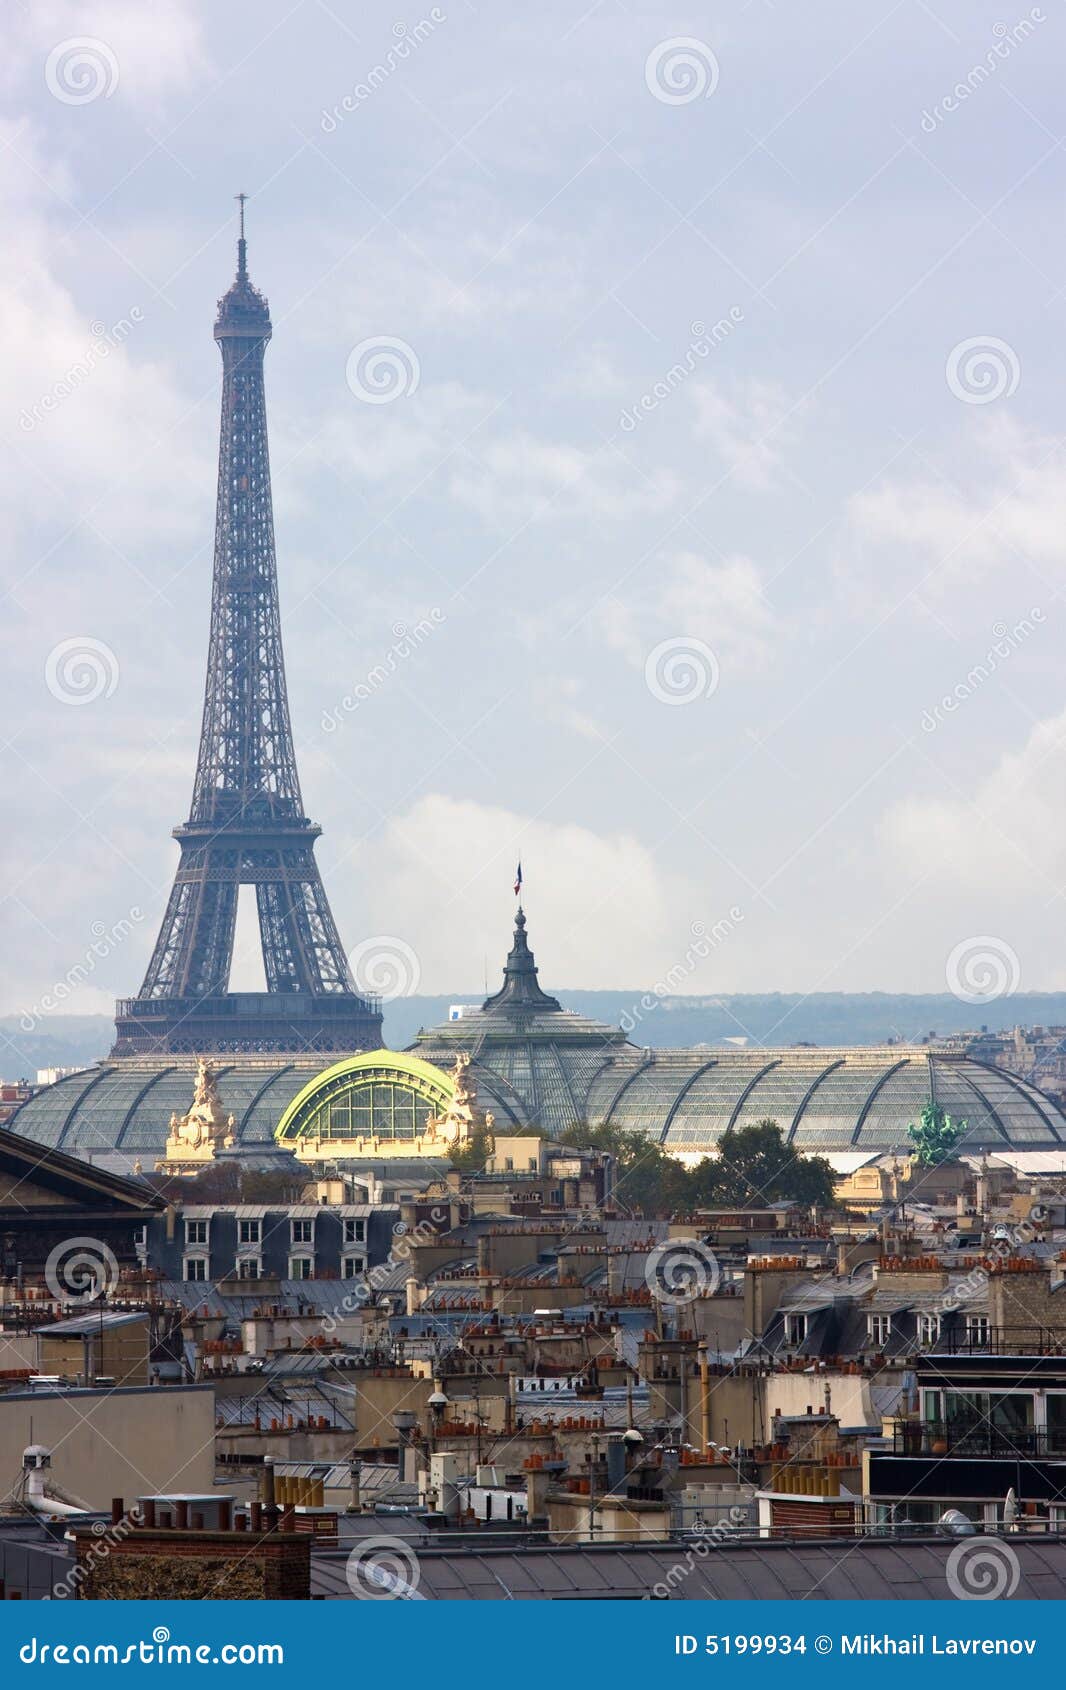 Parijs van hierboven. Parijs van bovengenoemd - daken, schoorstenen en de toren van Eiffel